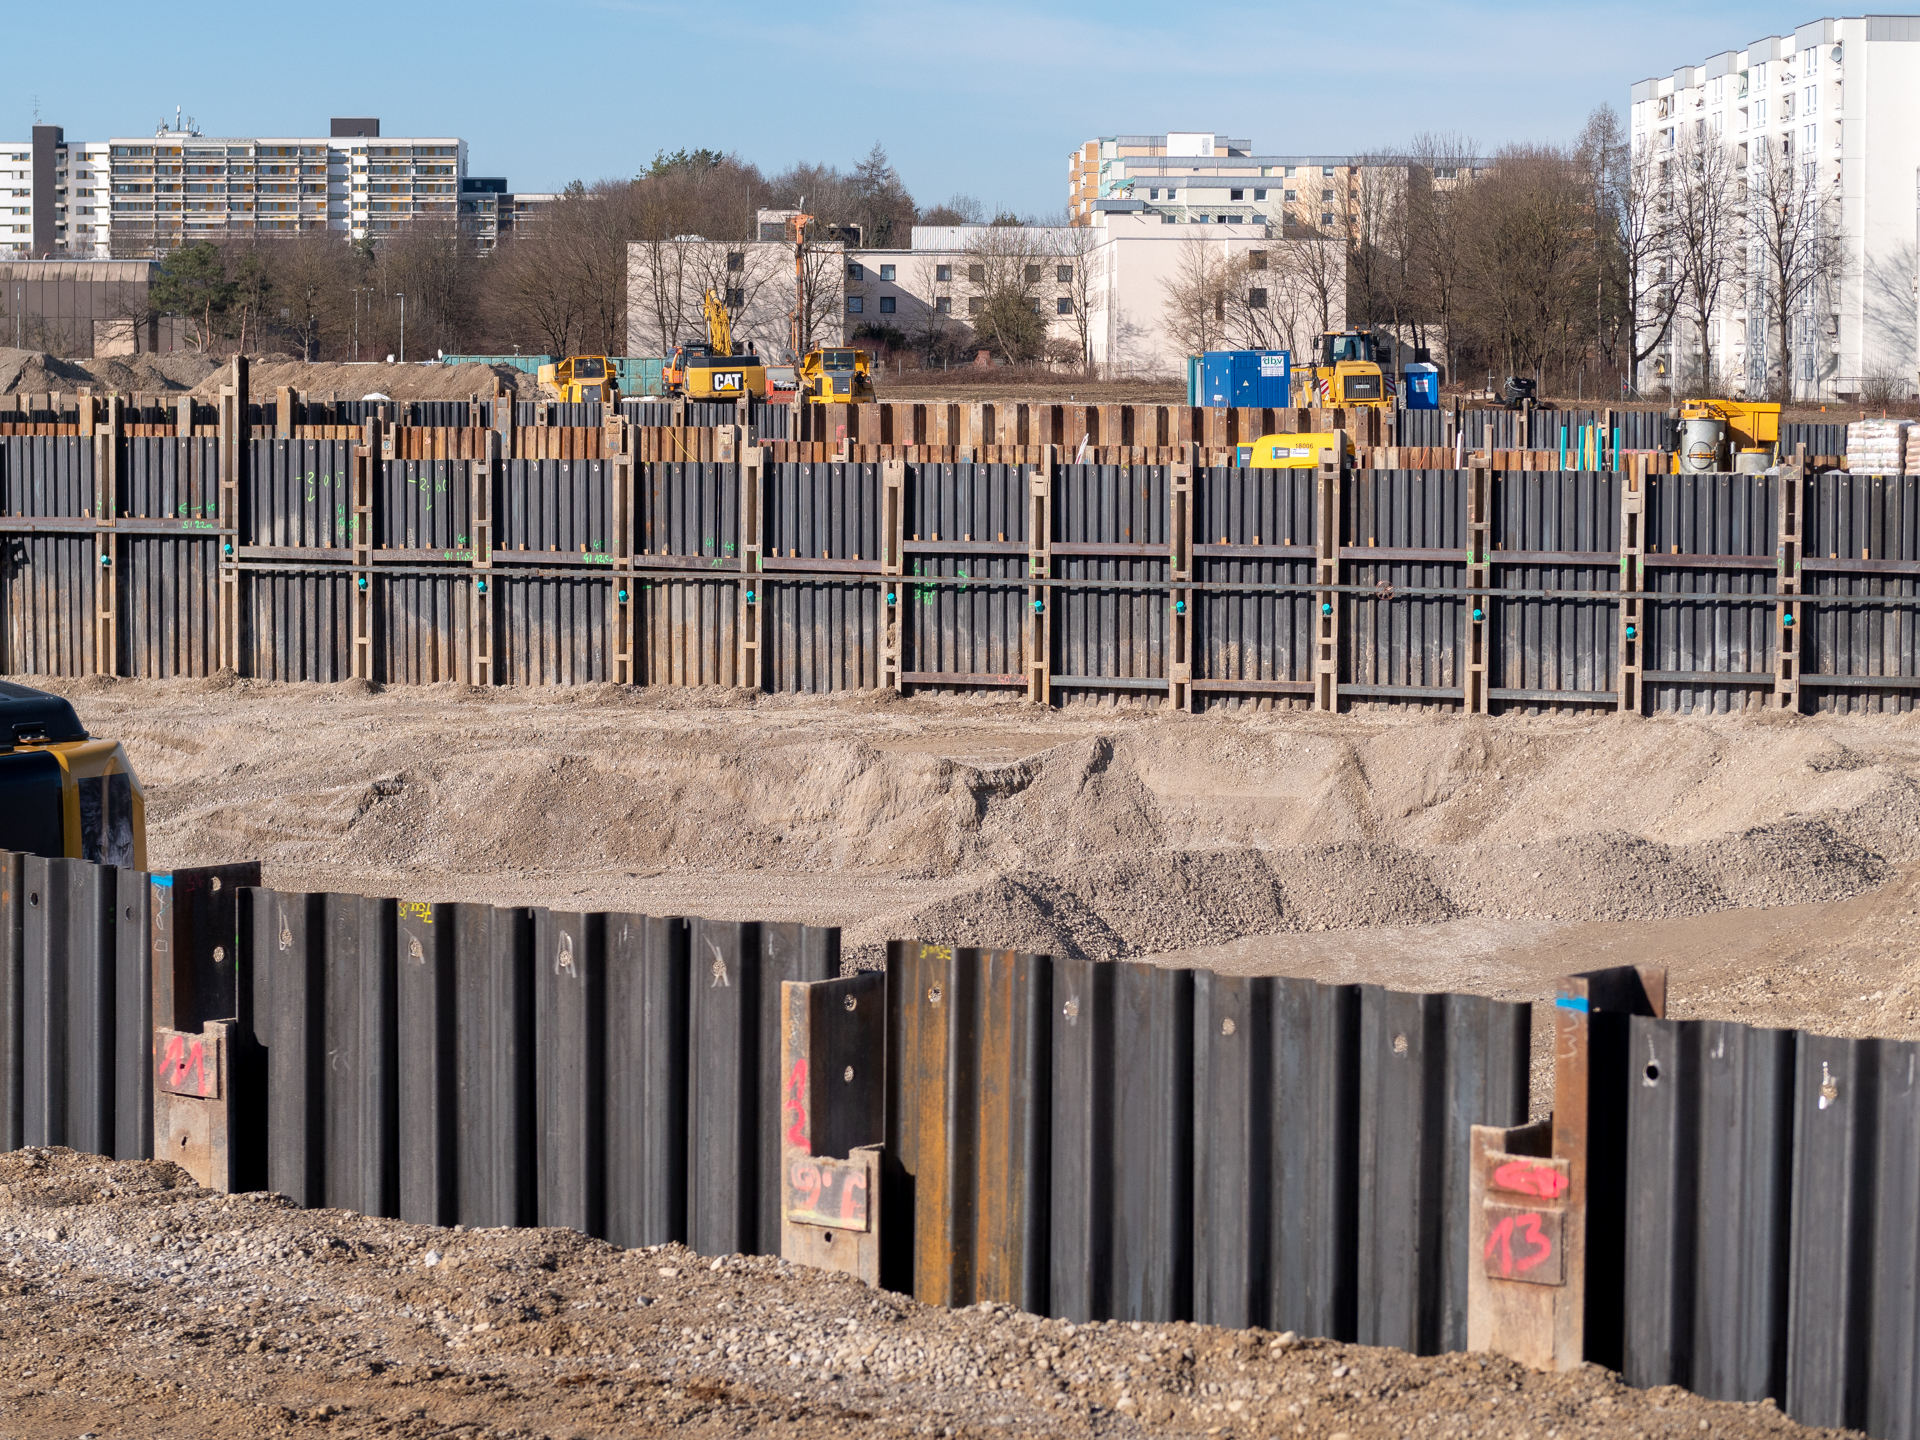 23.02.2019 - Kanalarbeiten in der Alexisstraße, vor der Baustelle Alexisquartier